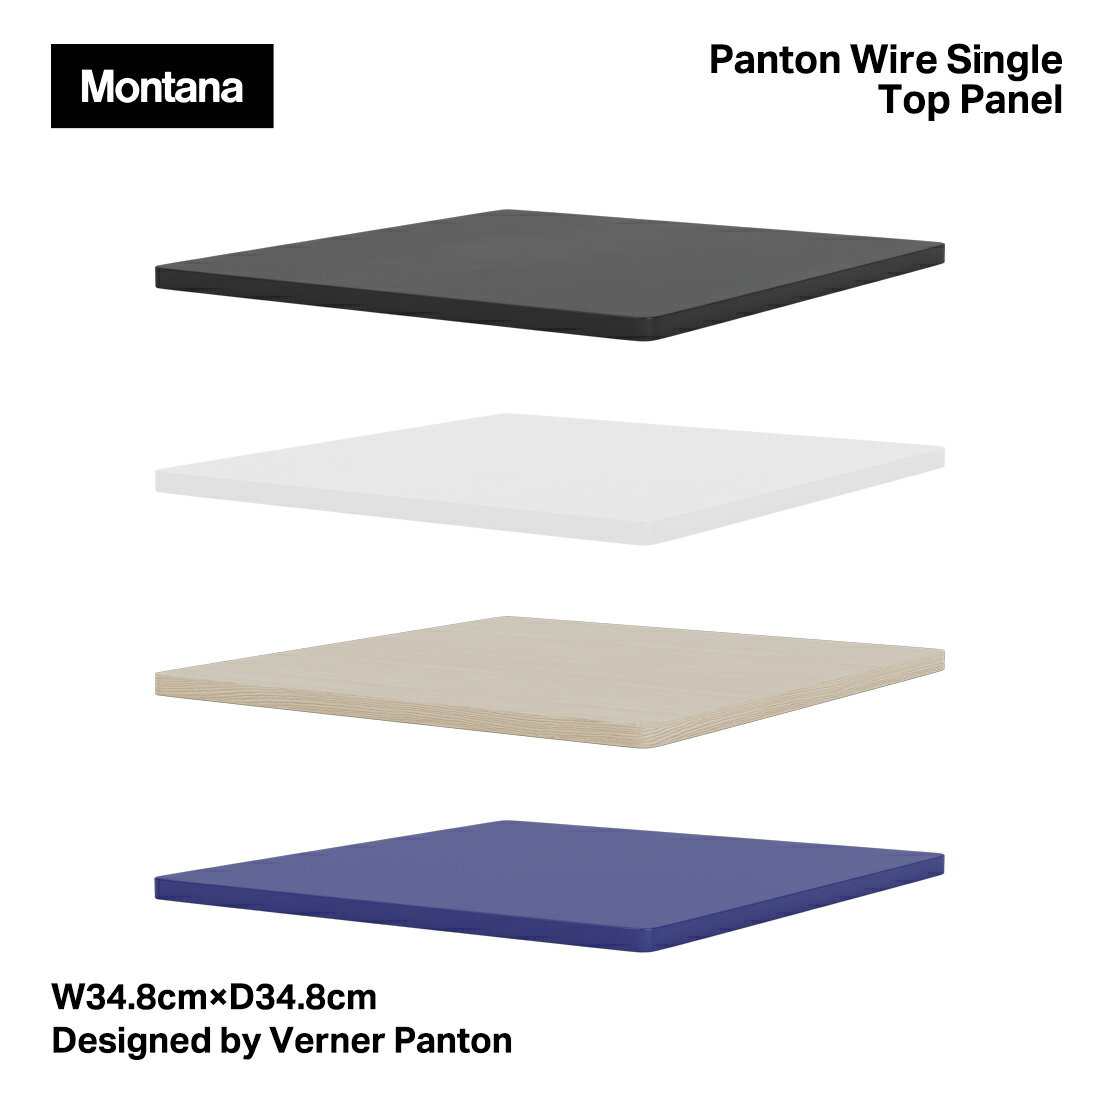 Montana モンタナ Panton Wire Single Top Panel VPWT1 パントンワイヤーシングルトップパネル 天板 W34.8cm×D34.8cm Verner Panton ヴァーナー・パントン